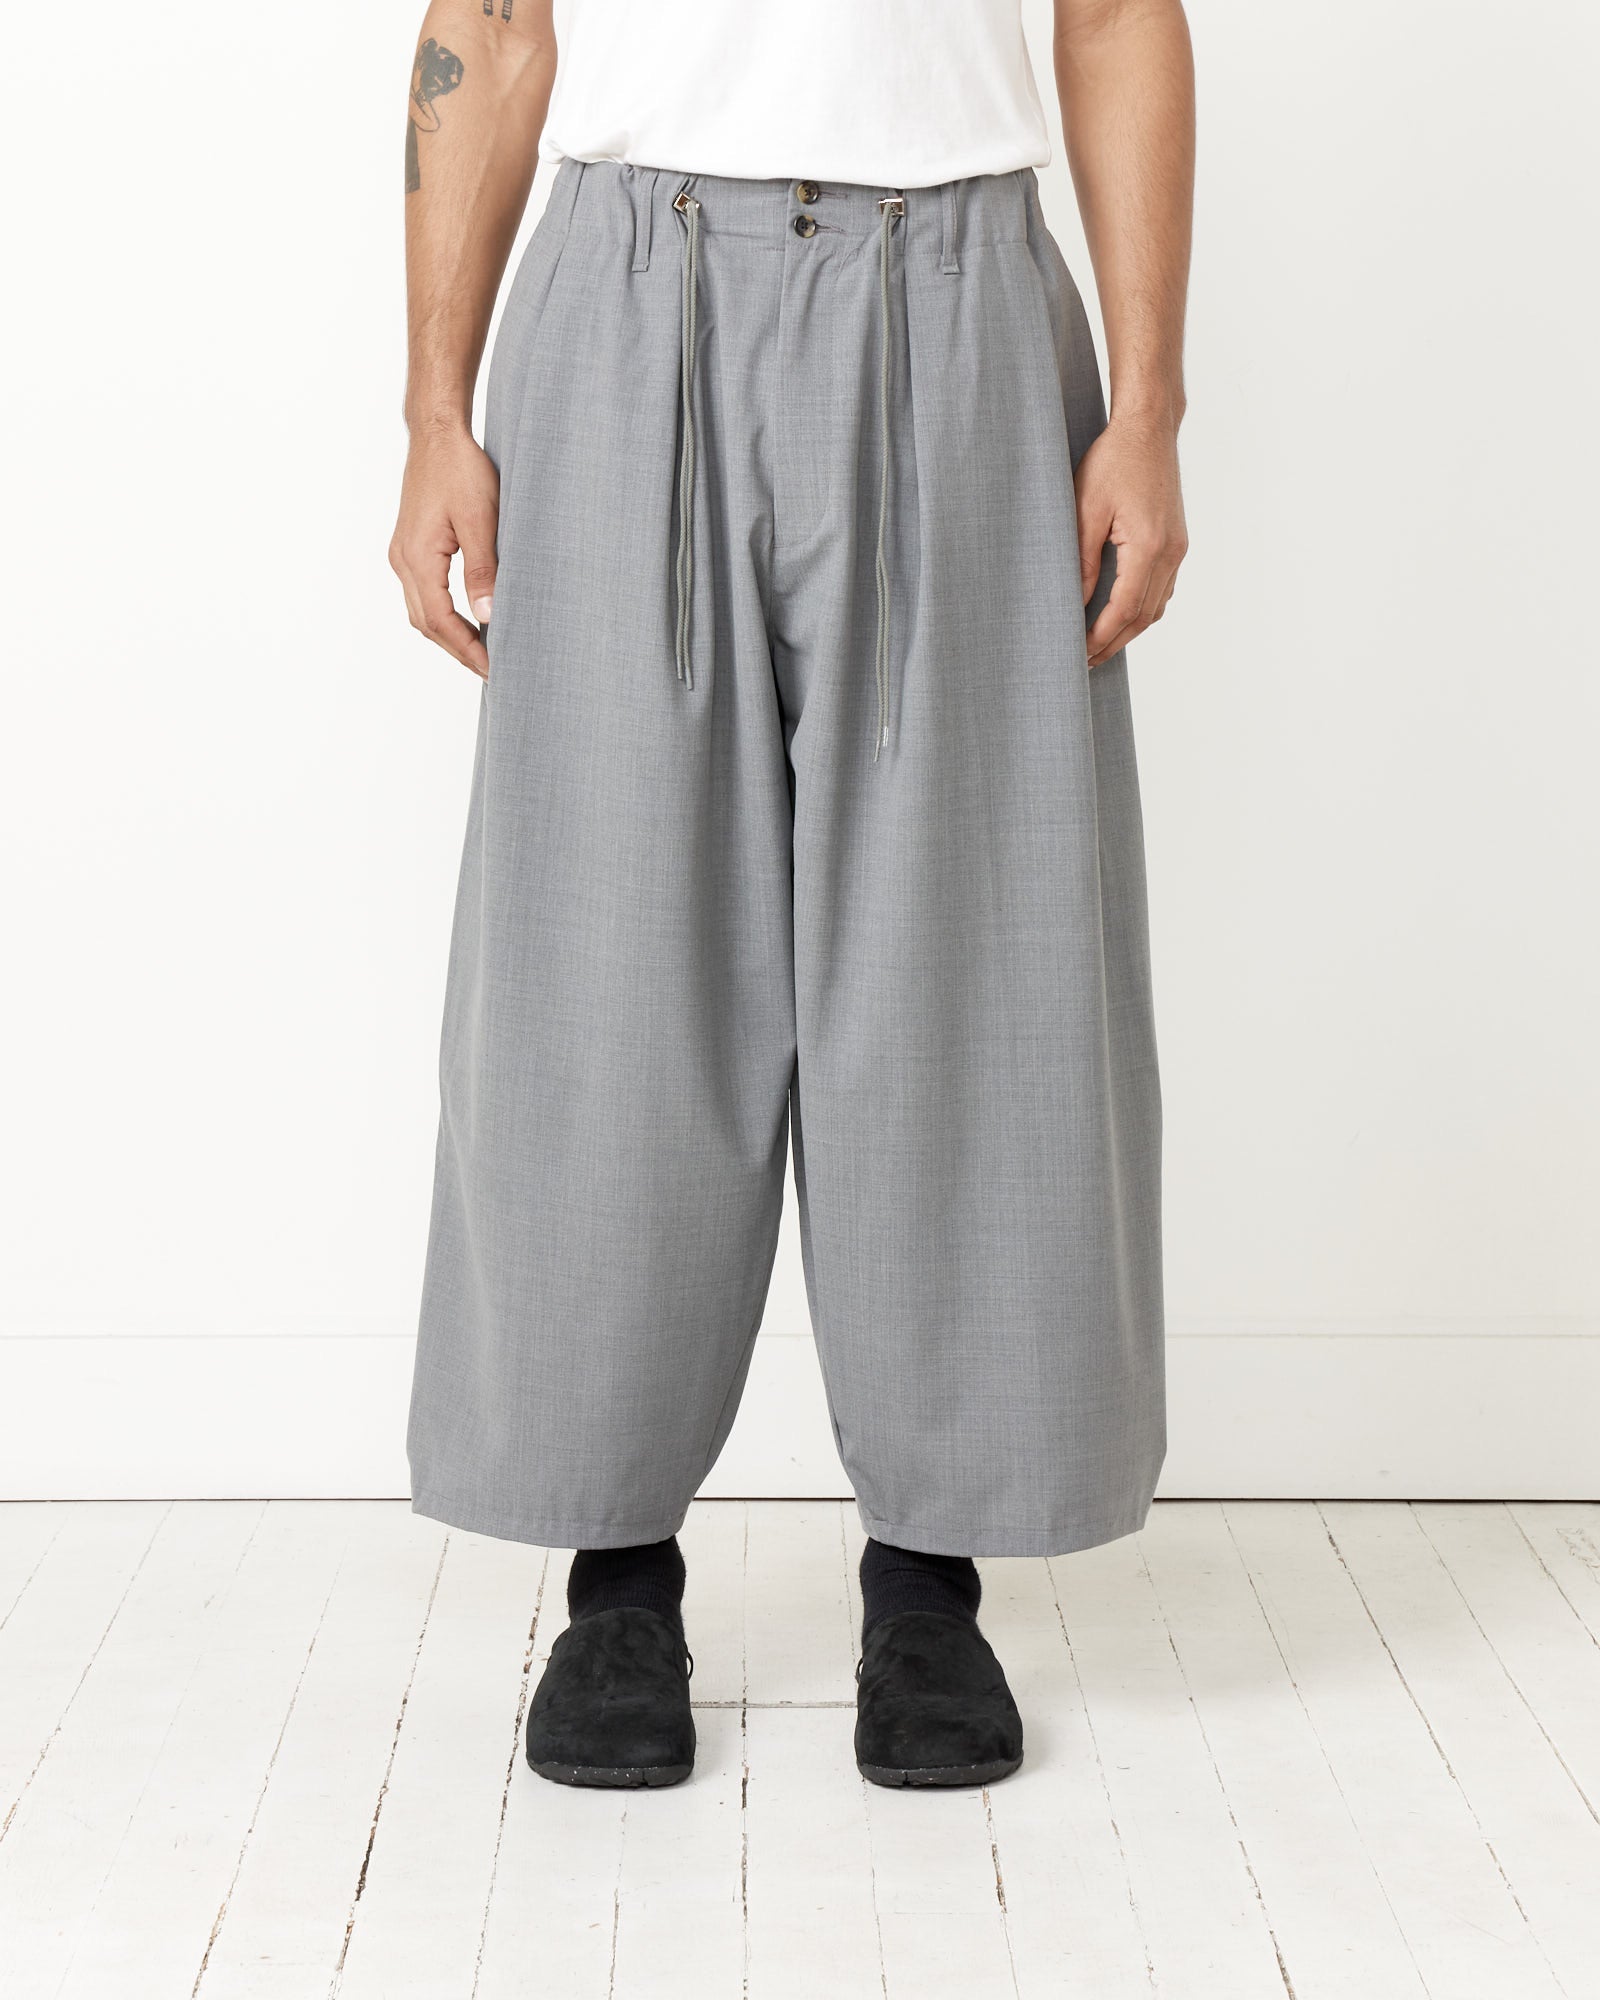 Essential Circular Pants in Grey